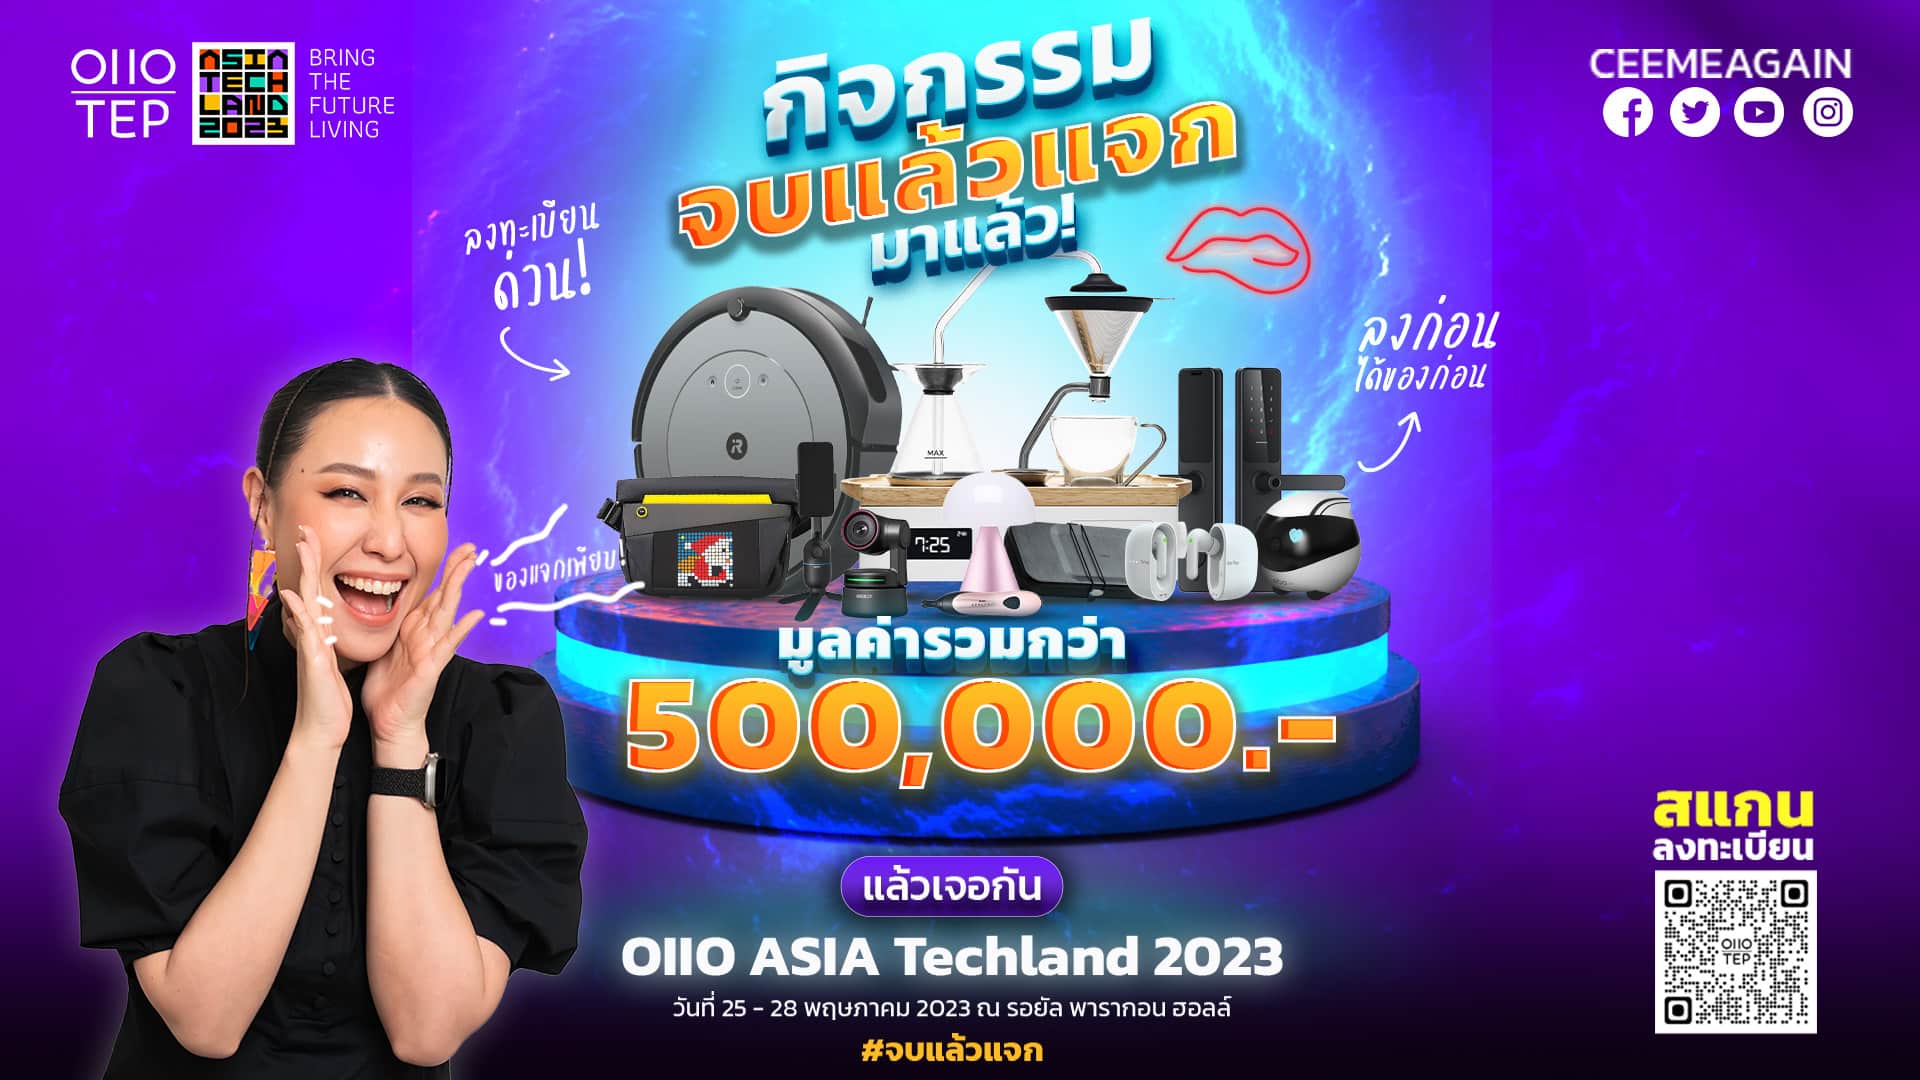 '0110' Asia Techland 2023